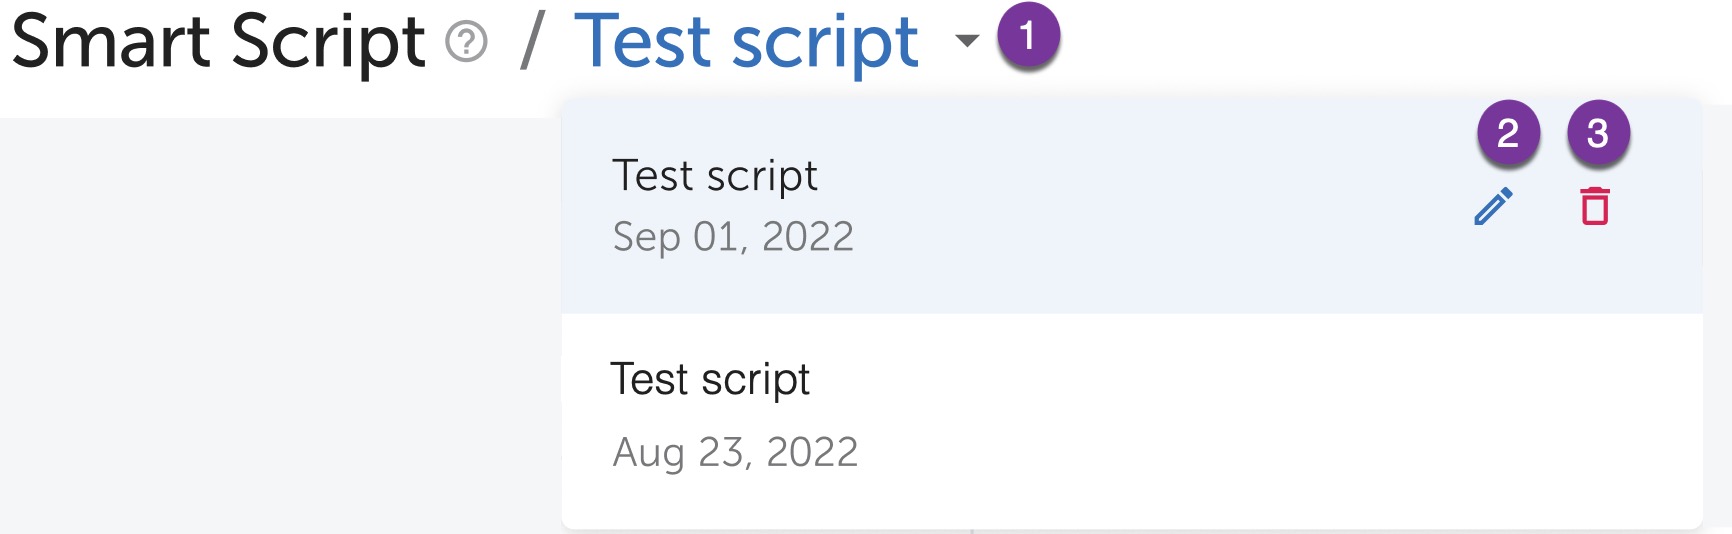 Script_steps.jpg